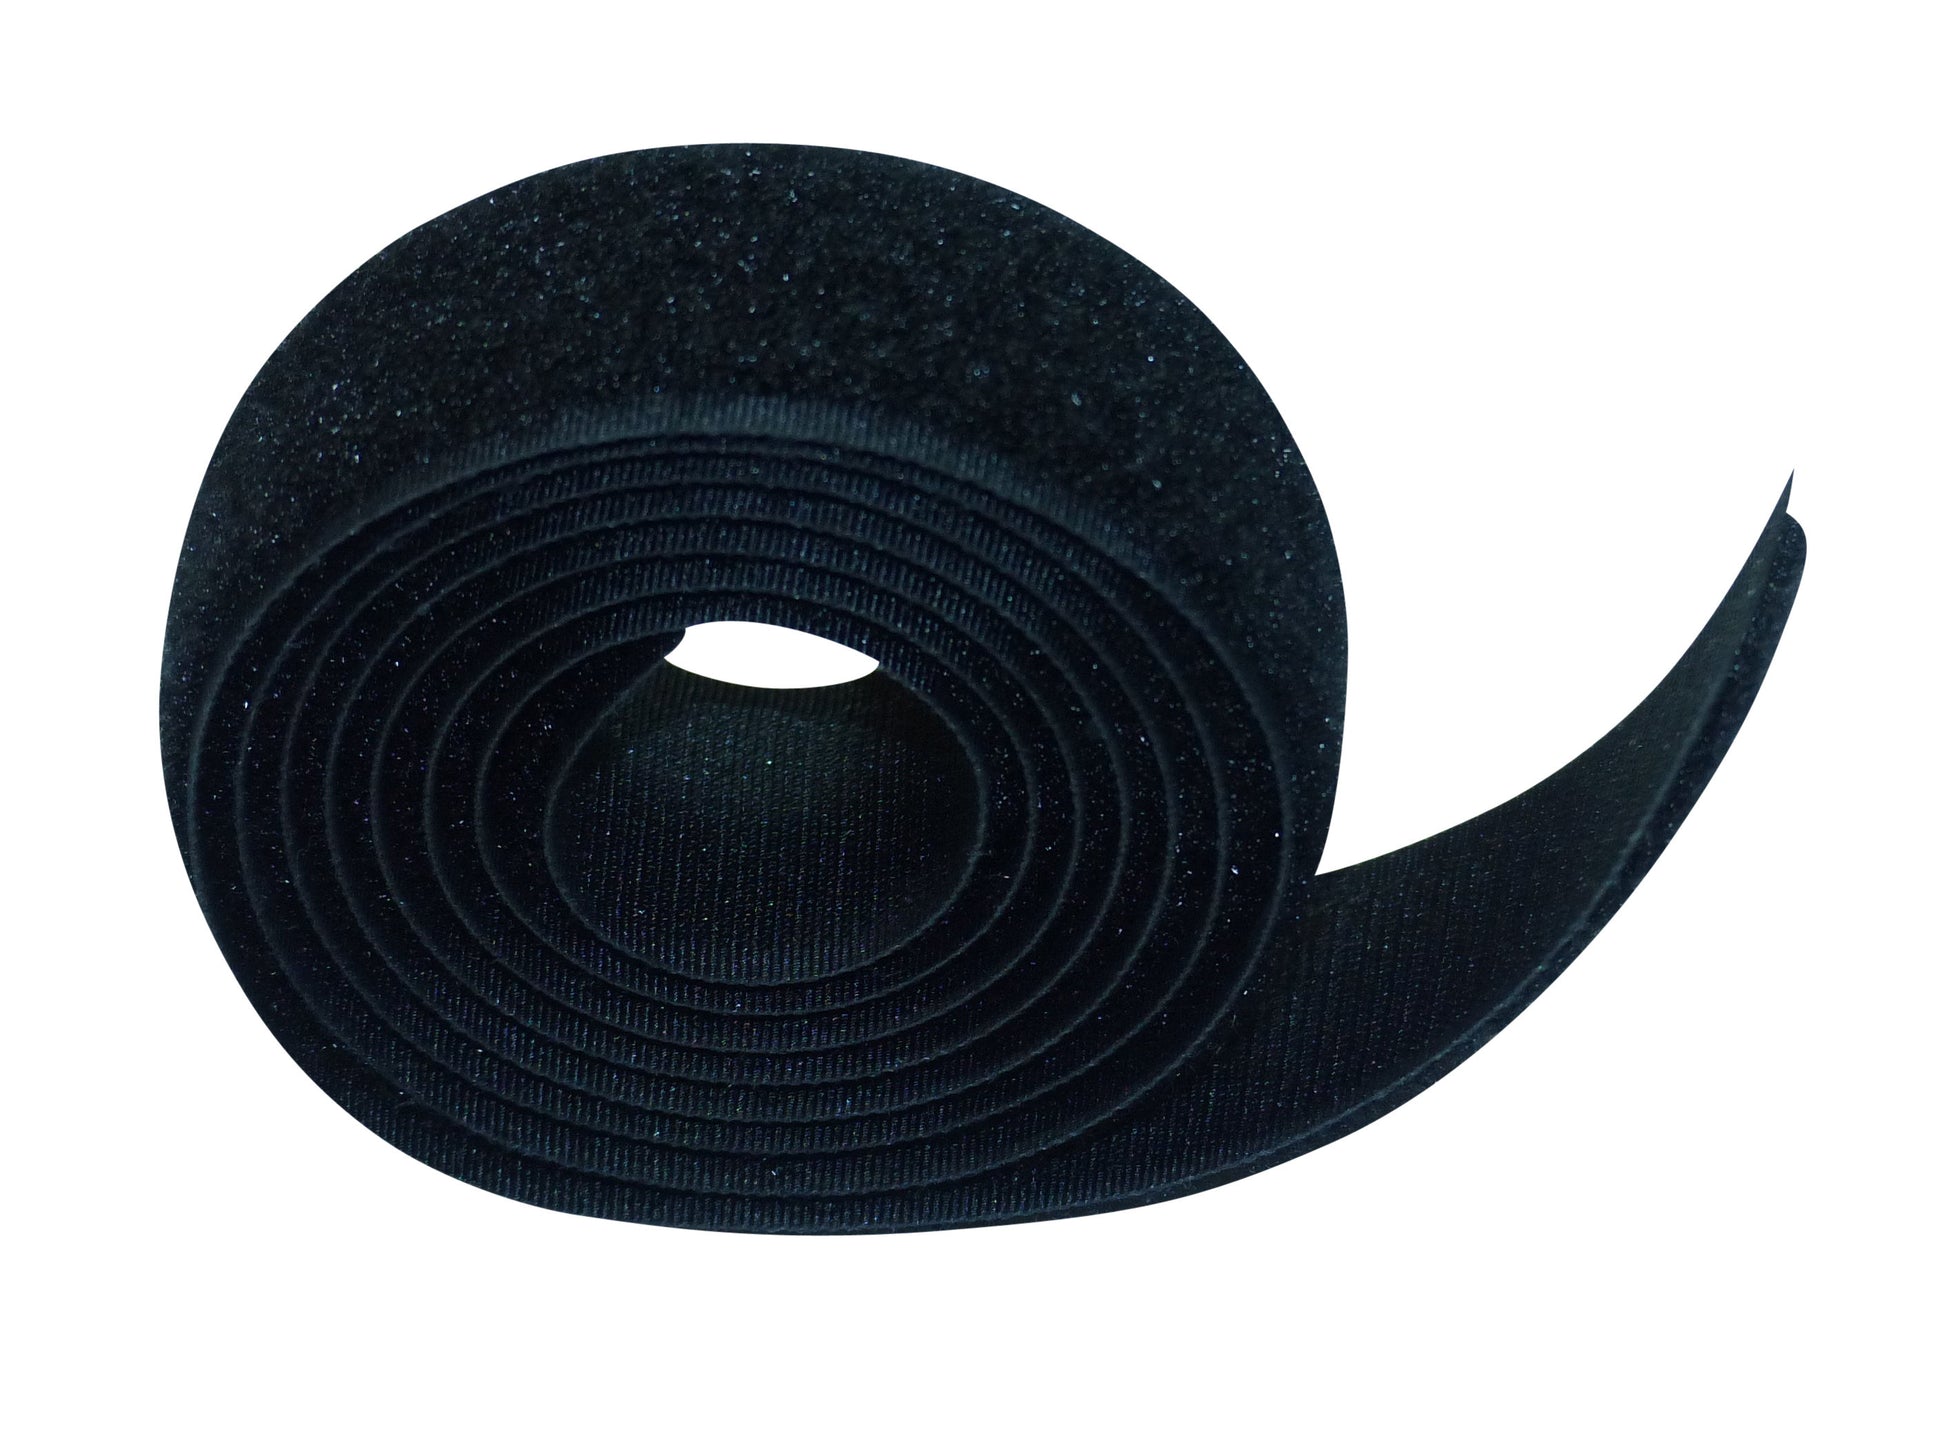 Benristraps 25mm sewable hook and loop tape (2 metres) loop only in black